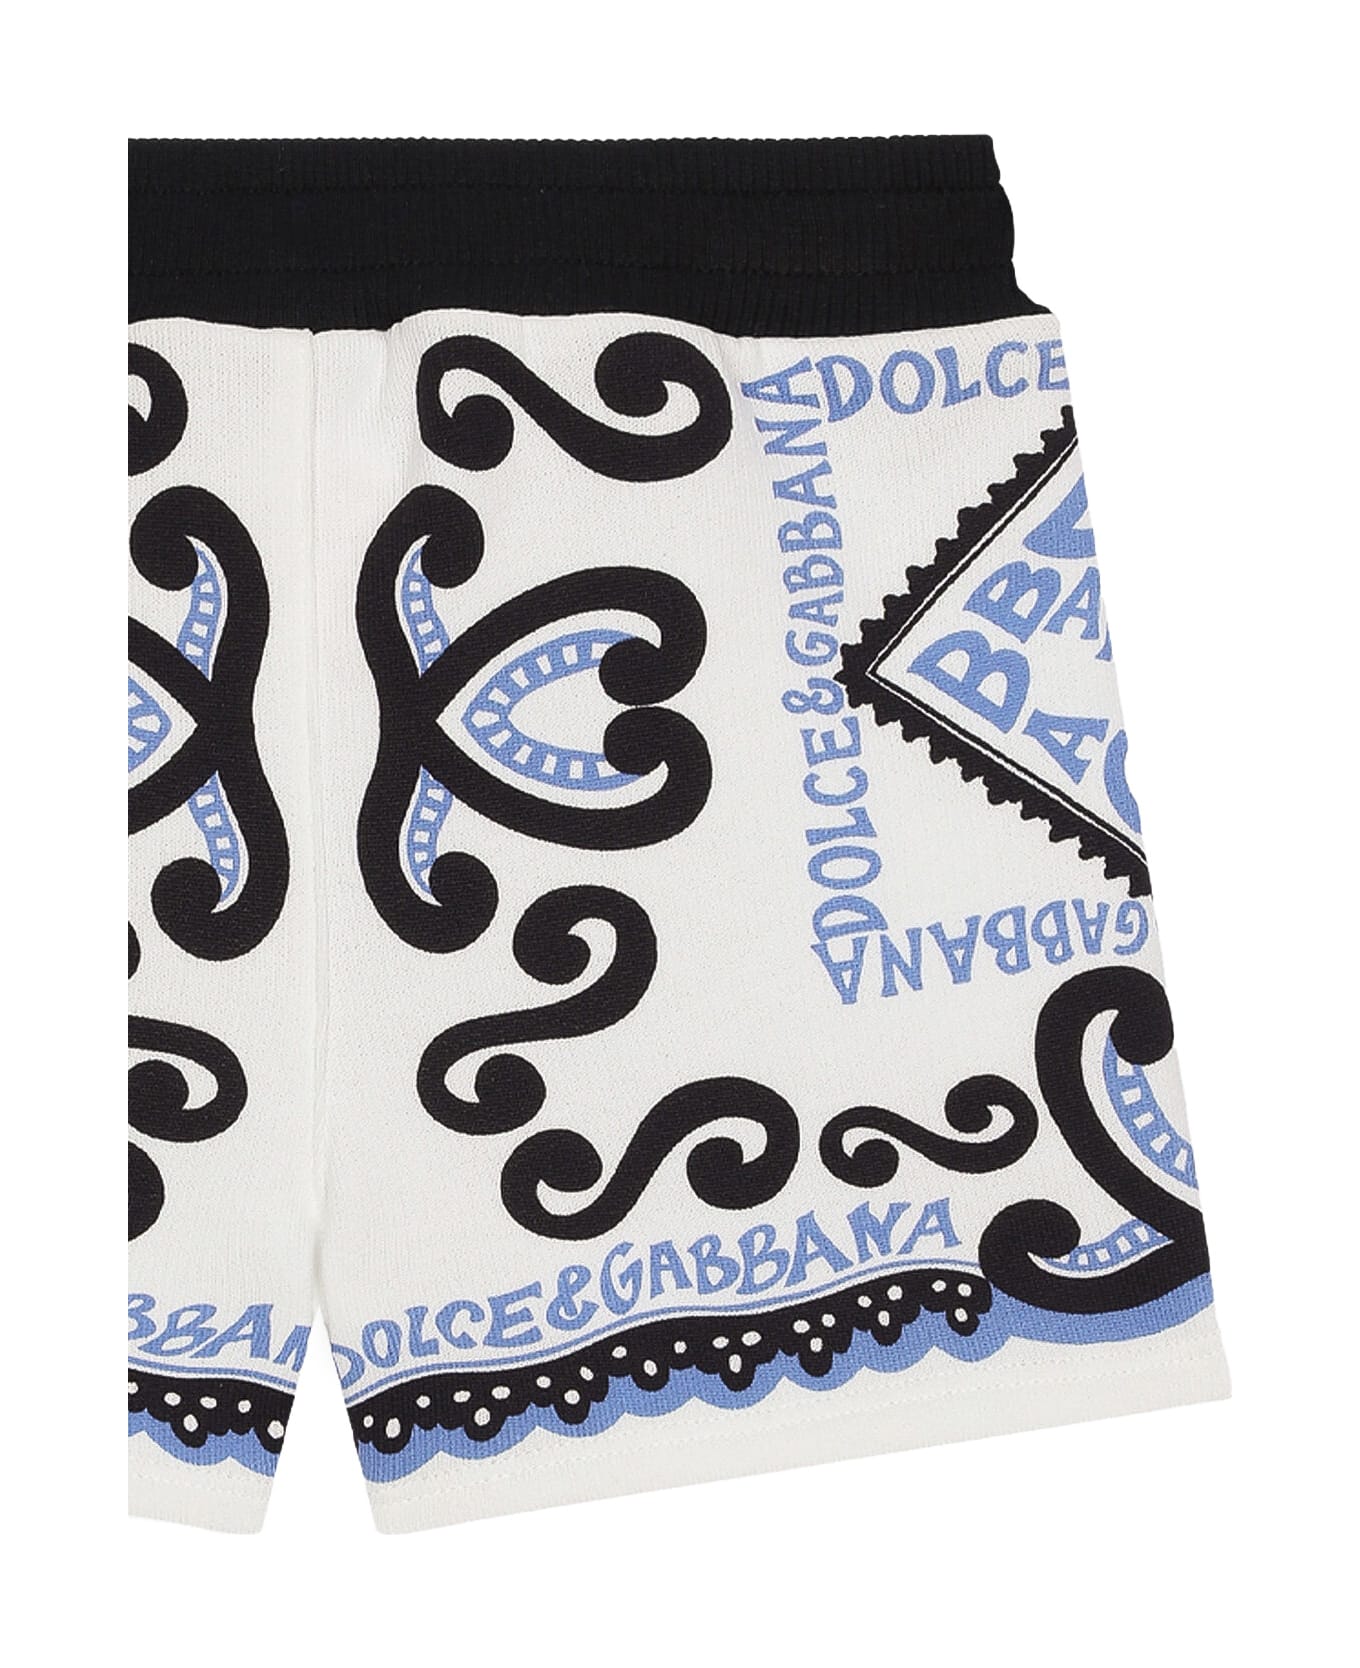 Dolce & Gabbana Marina Print Jersey Bermuda Shorts - Blue ボトムス